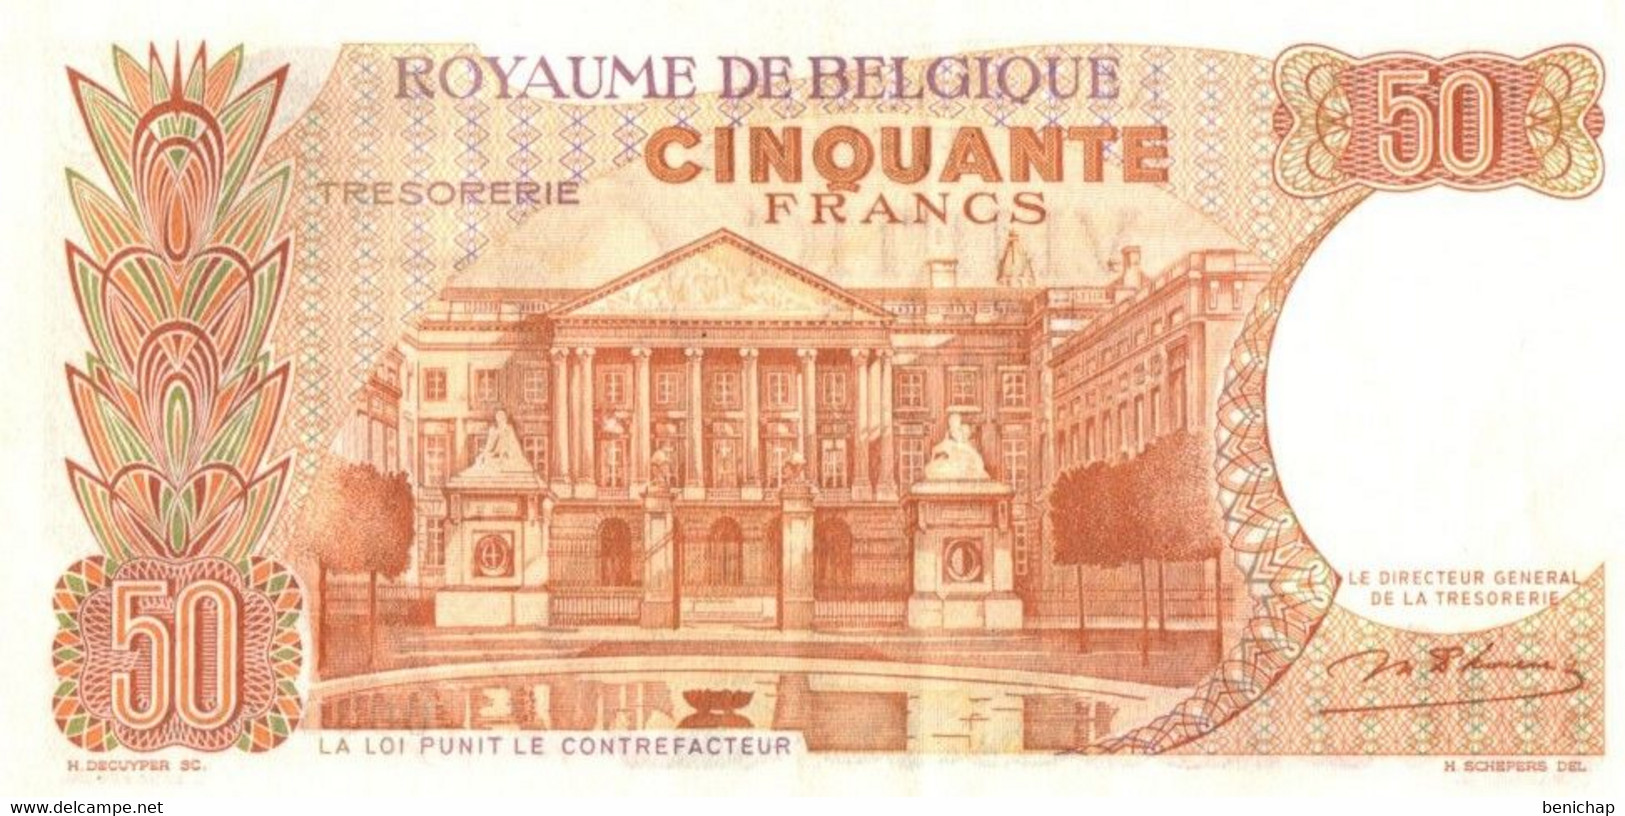 50 Francs - Frank 16.05.66 - Belgique - Belgïe - Roi Baudouin & Fabiola - UNC. - 50 Francos